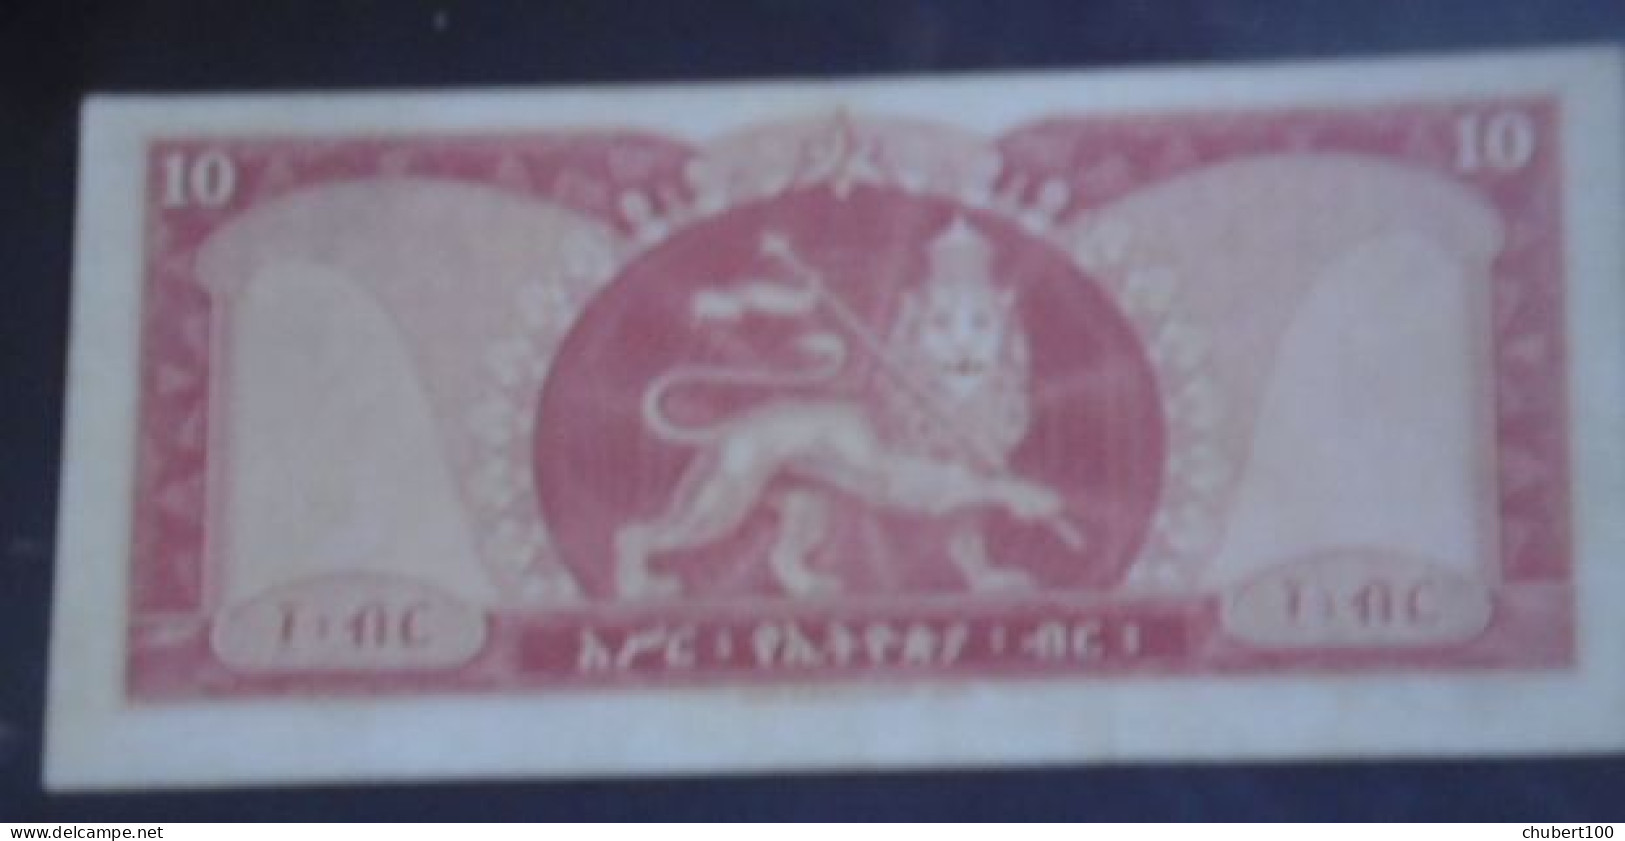 ETHIOPIA , P 27, 10 Dollar , ND 1966, EF/almost UNC - Ethiopië